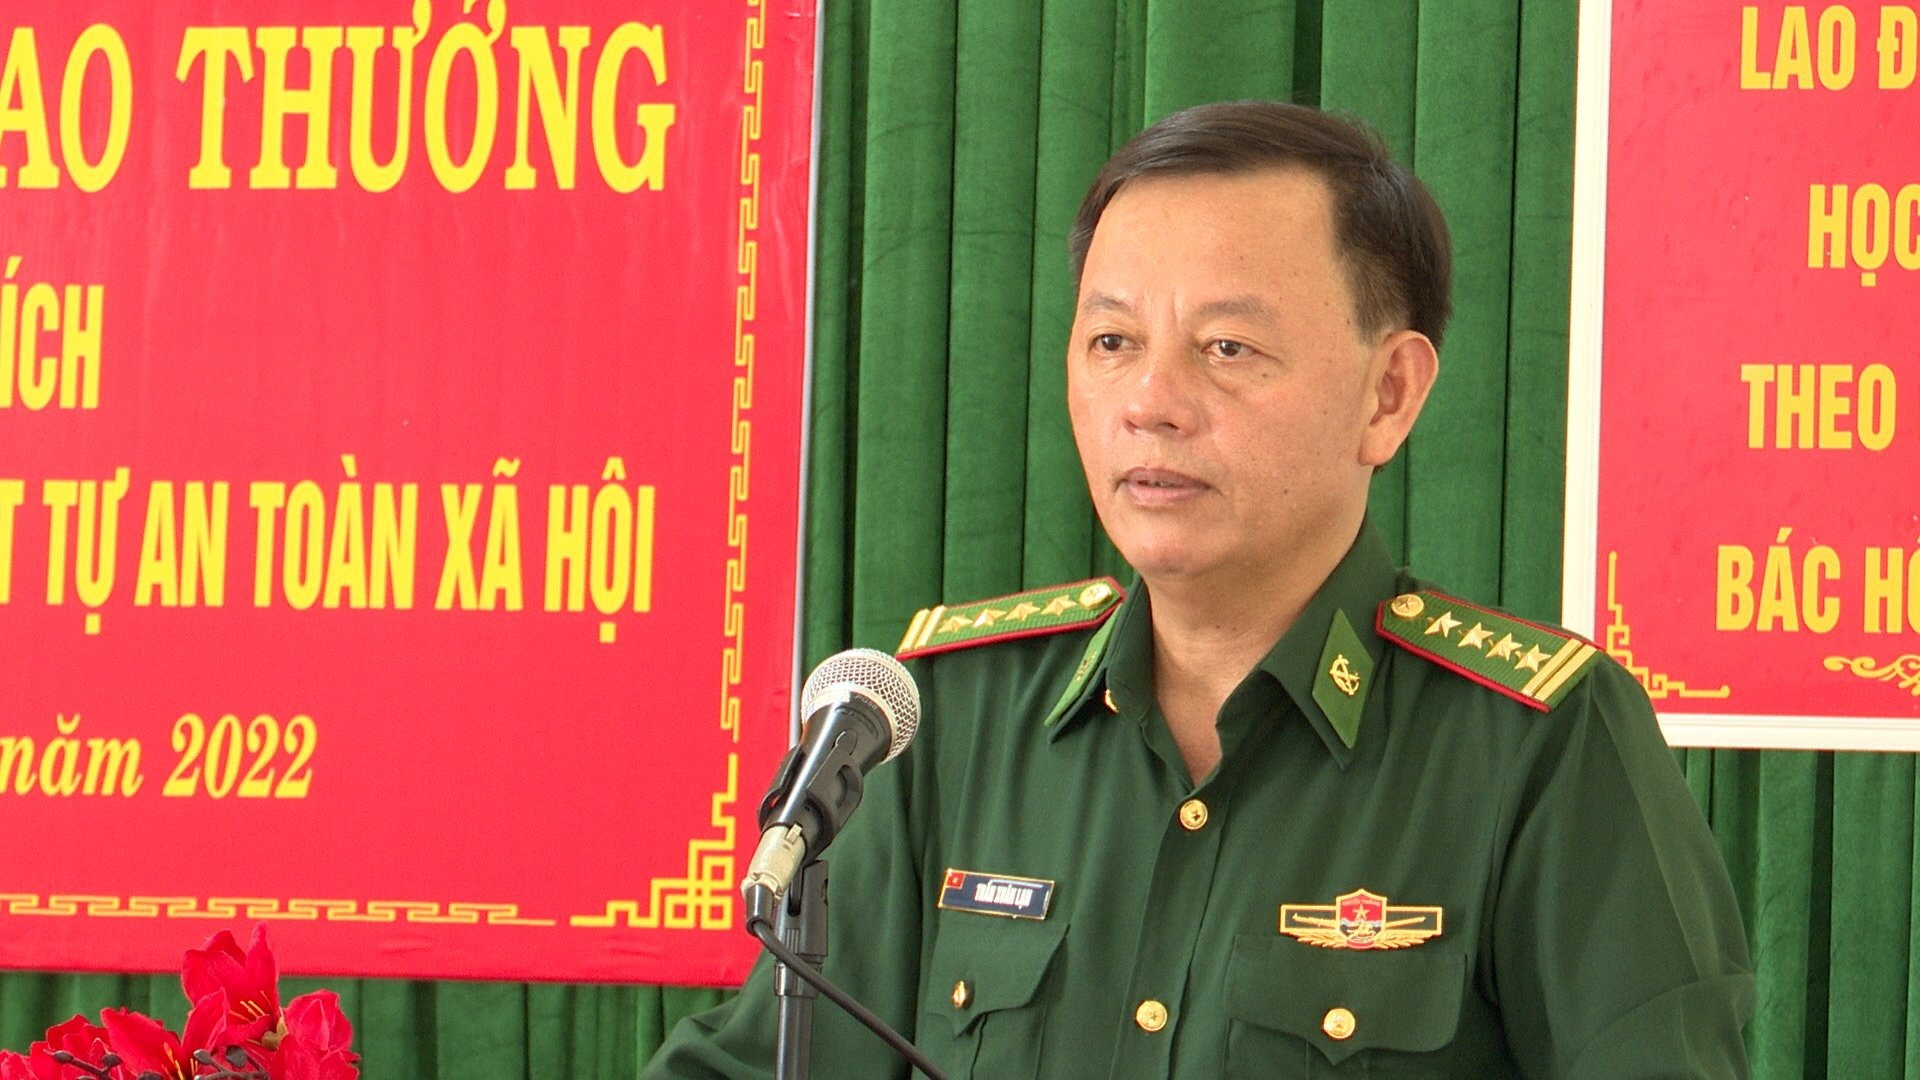 Đại tá Trần Xuân Lạn, Phó Chỉ huy trưởng BĐBP Quảng Trị phát biểu tại buổi khen thưởng.